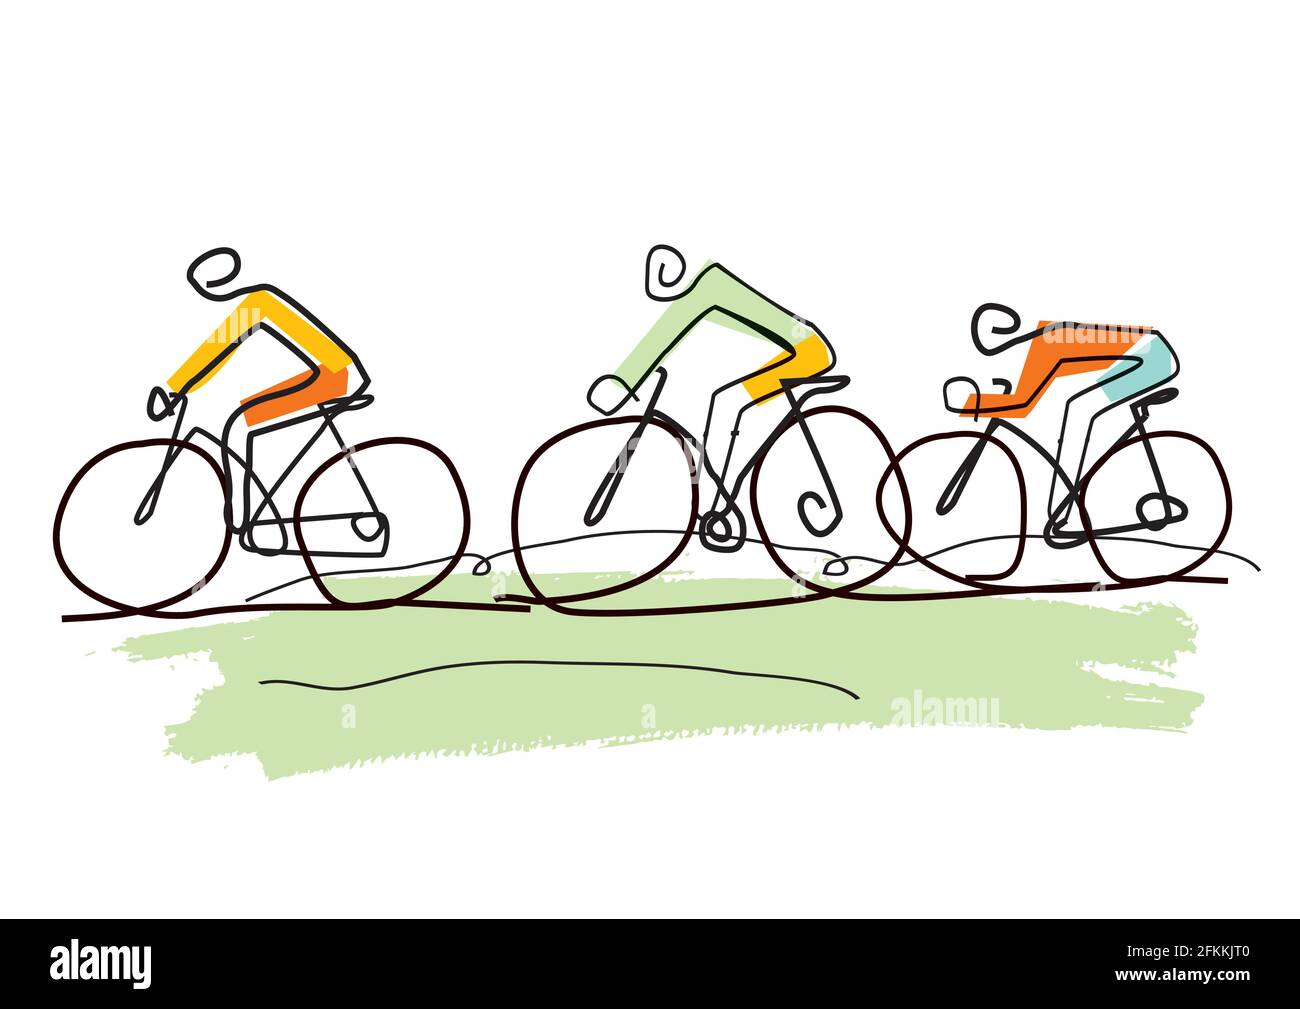 Radtour, Linienkunst stilisierte Karikatur. Stilisierte Zeichnung von drei Radfahrern in einer abstrakten Landschaft. Vektor verfügbar. Stock Vektor